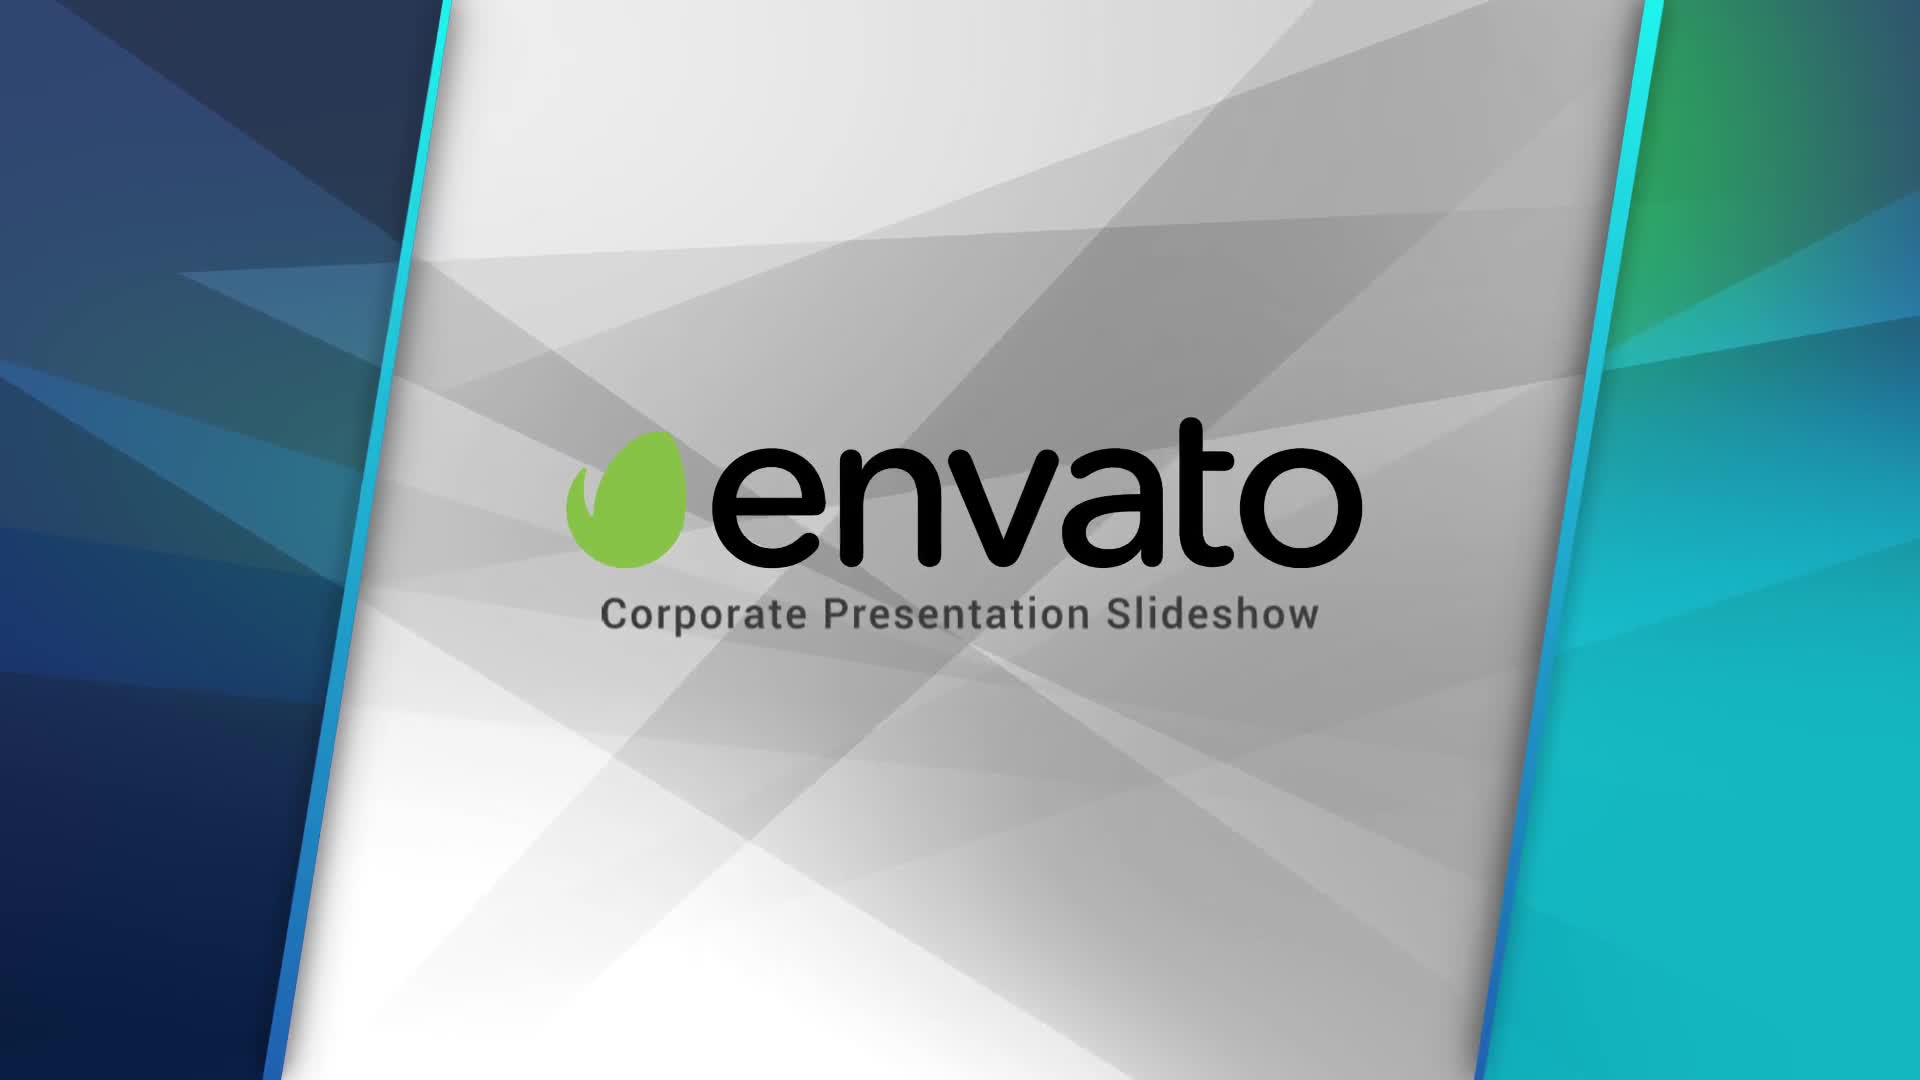 Corporate Presentation Slideshow Videohive 25062109 Premiere Pro Image 1